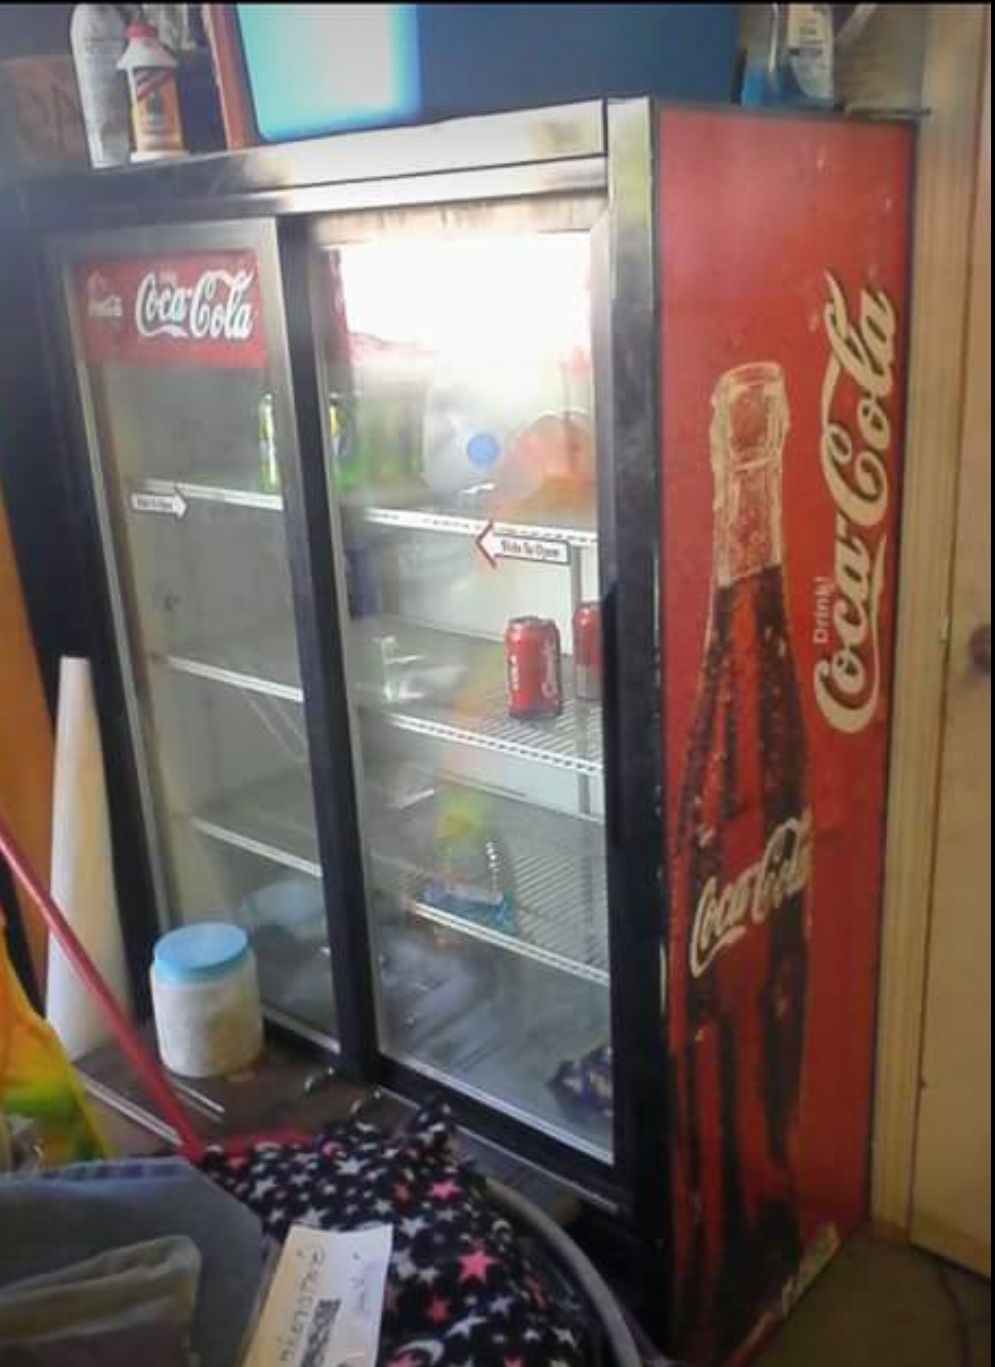 Coca cola refrigerator (true)